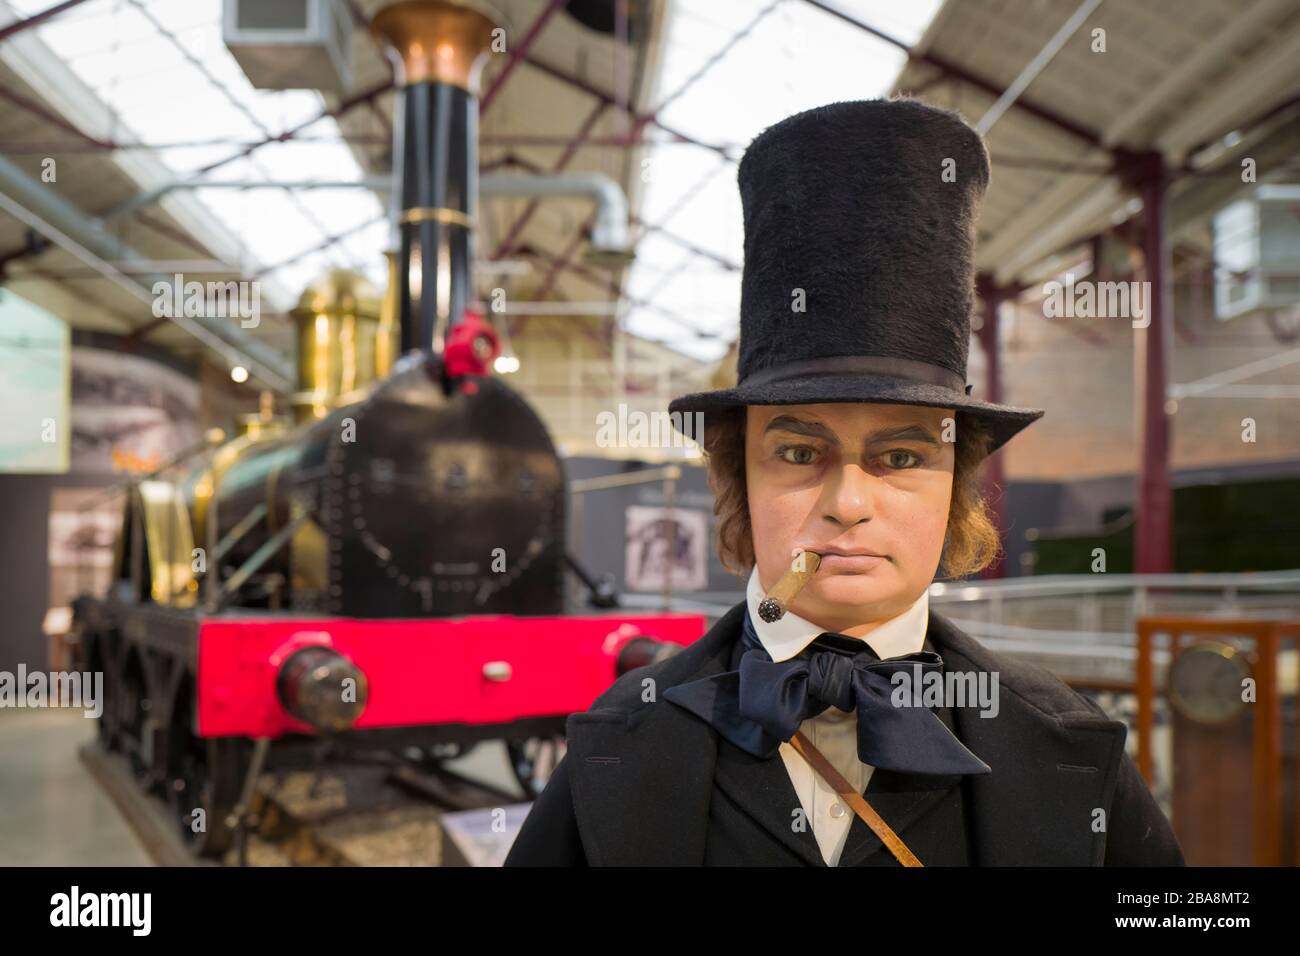 Un modèle grandeur nature d'Isambard Kingdom Brunel, célèbre entrepreneur et ingénieur victorien devant une réplique d'une de ses premières locomotives à vapeur o Banque D'Images